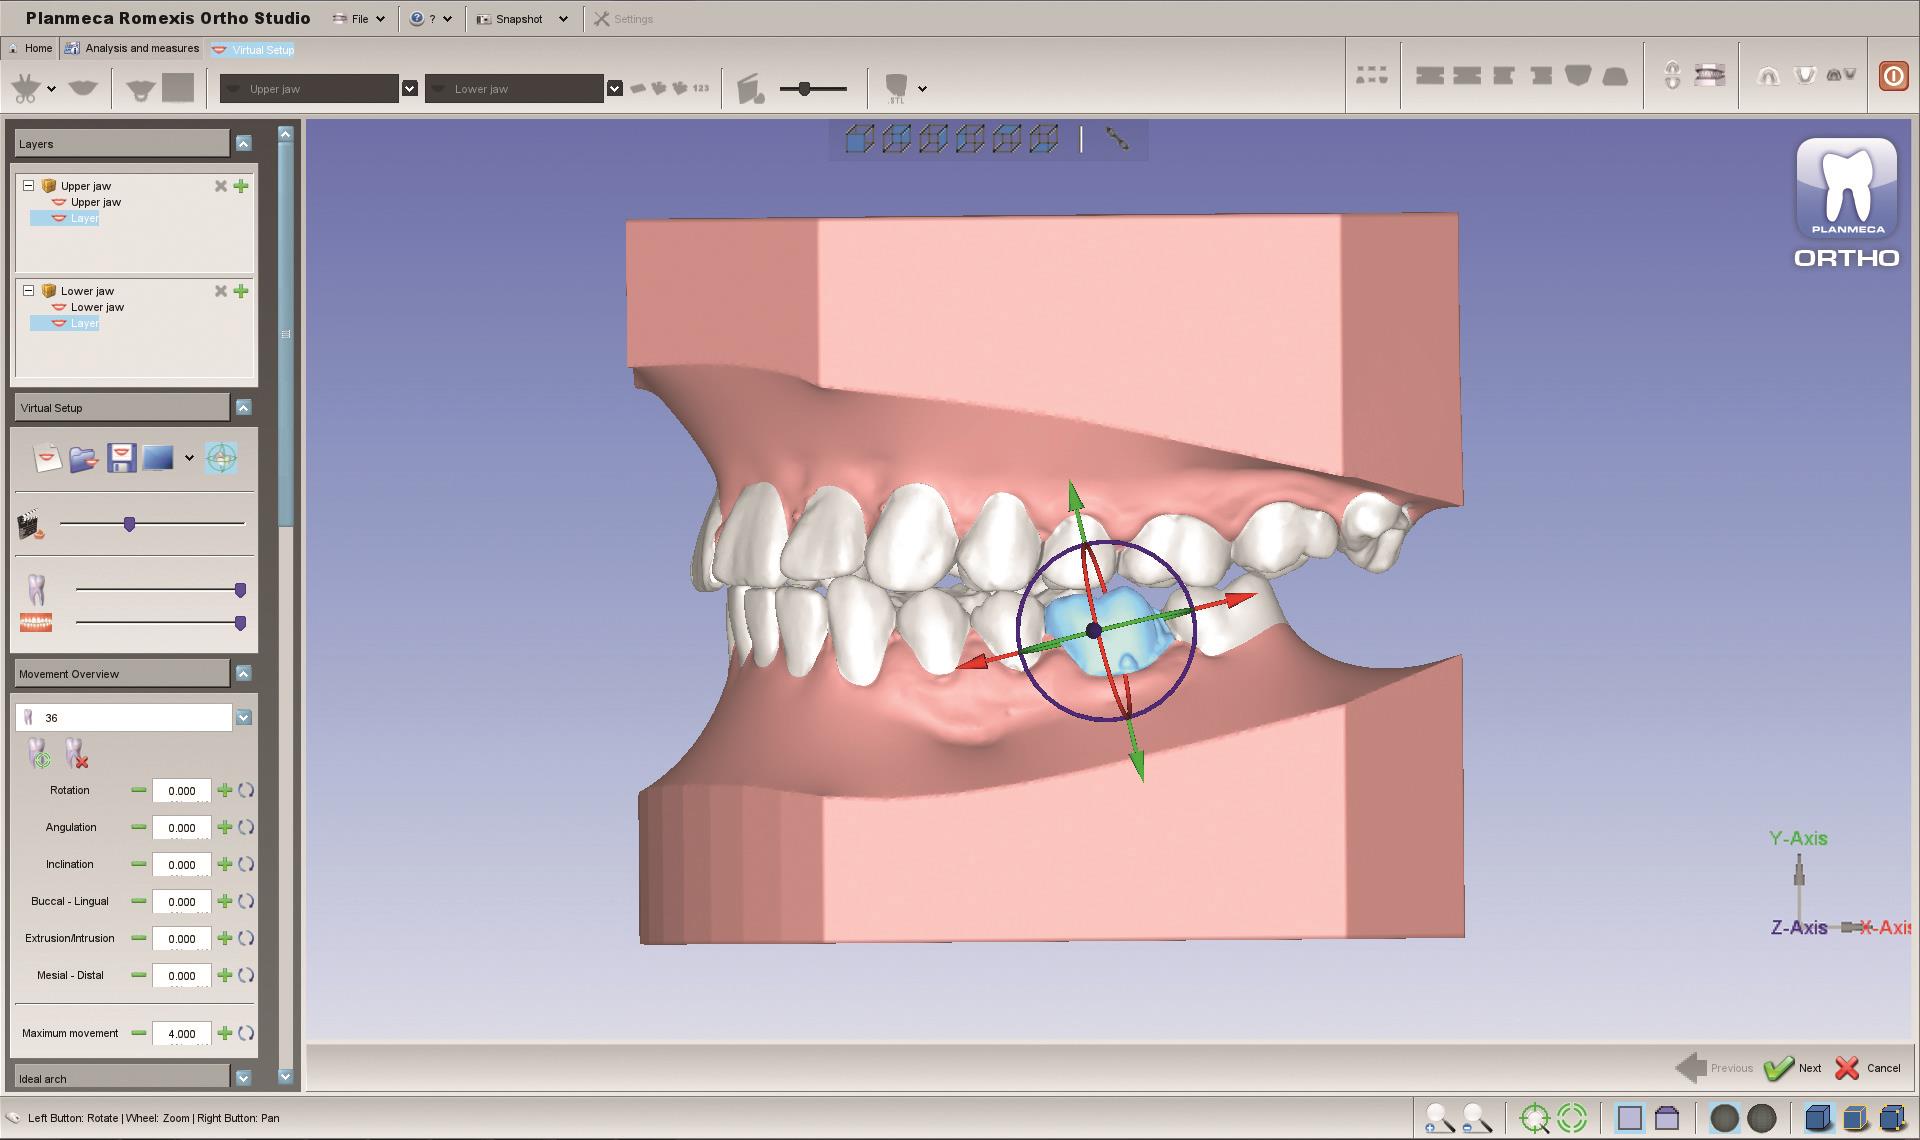 Planmeca présente de nouveaux outils 3D destinés aux orthodontistes et laboratoires dentaires